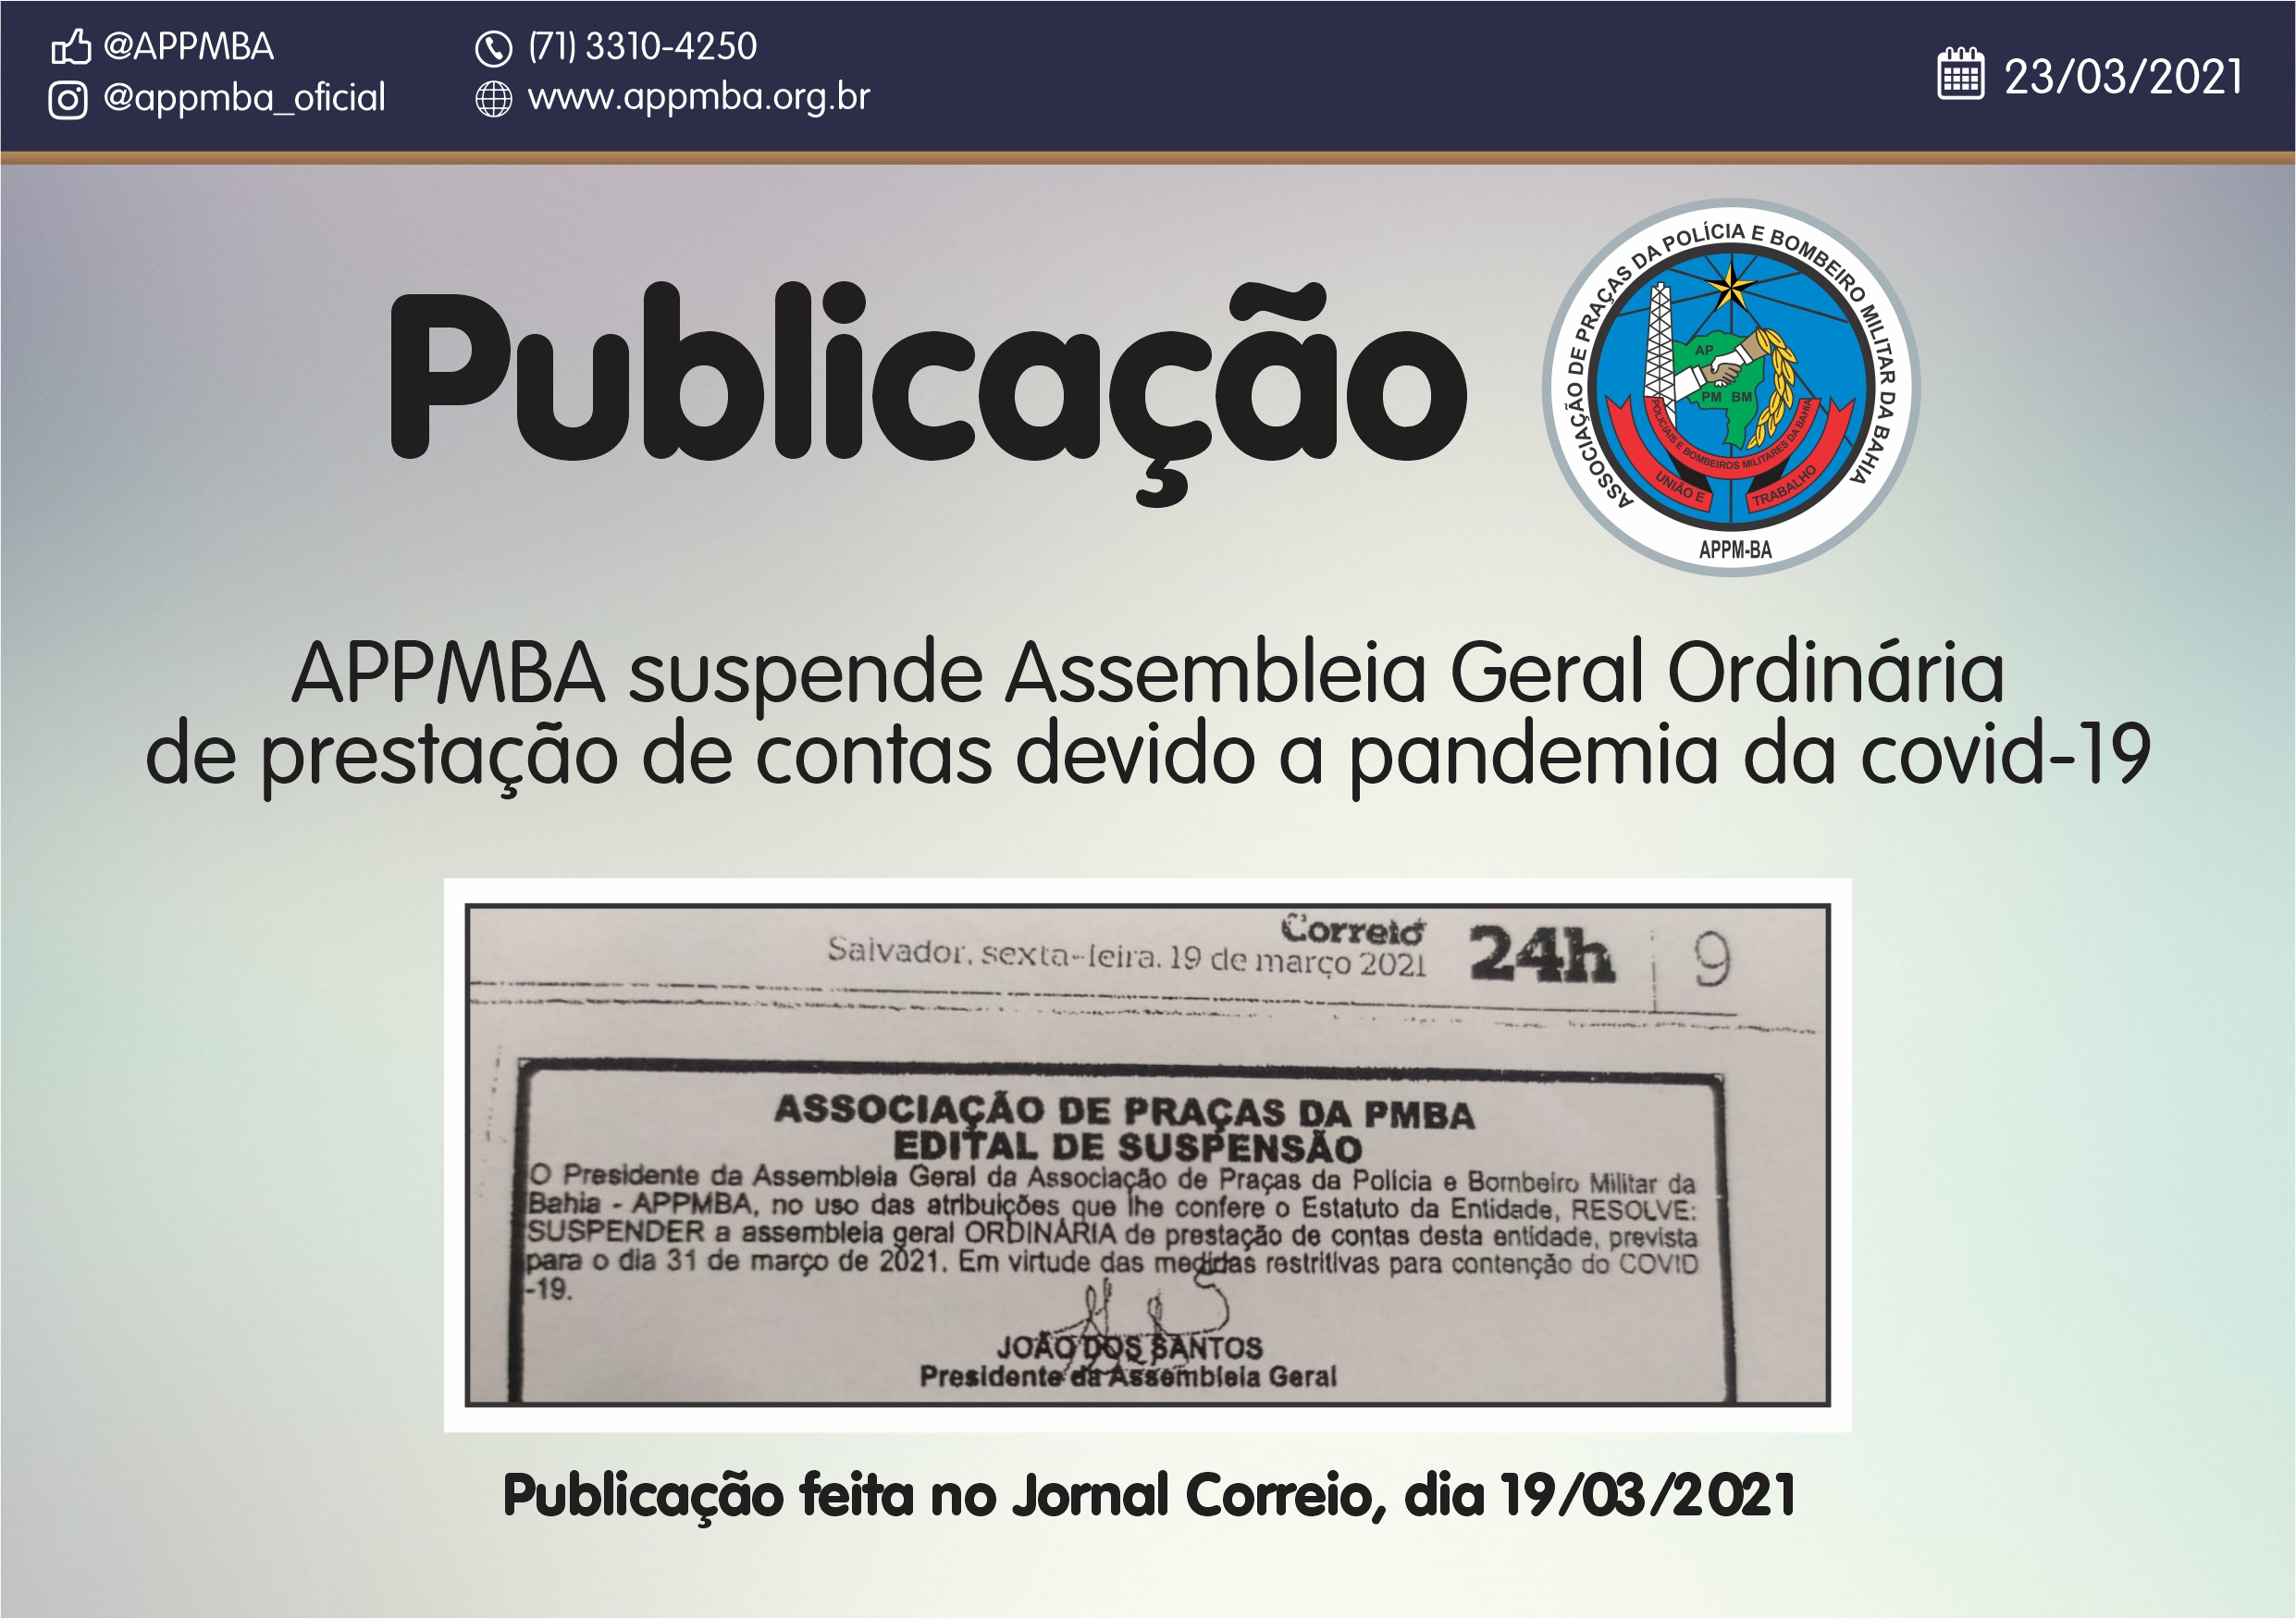 APPMBA suspende Assembleia Geral Ordinária de prestação de contas devido a pandemia da covid-19